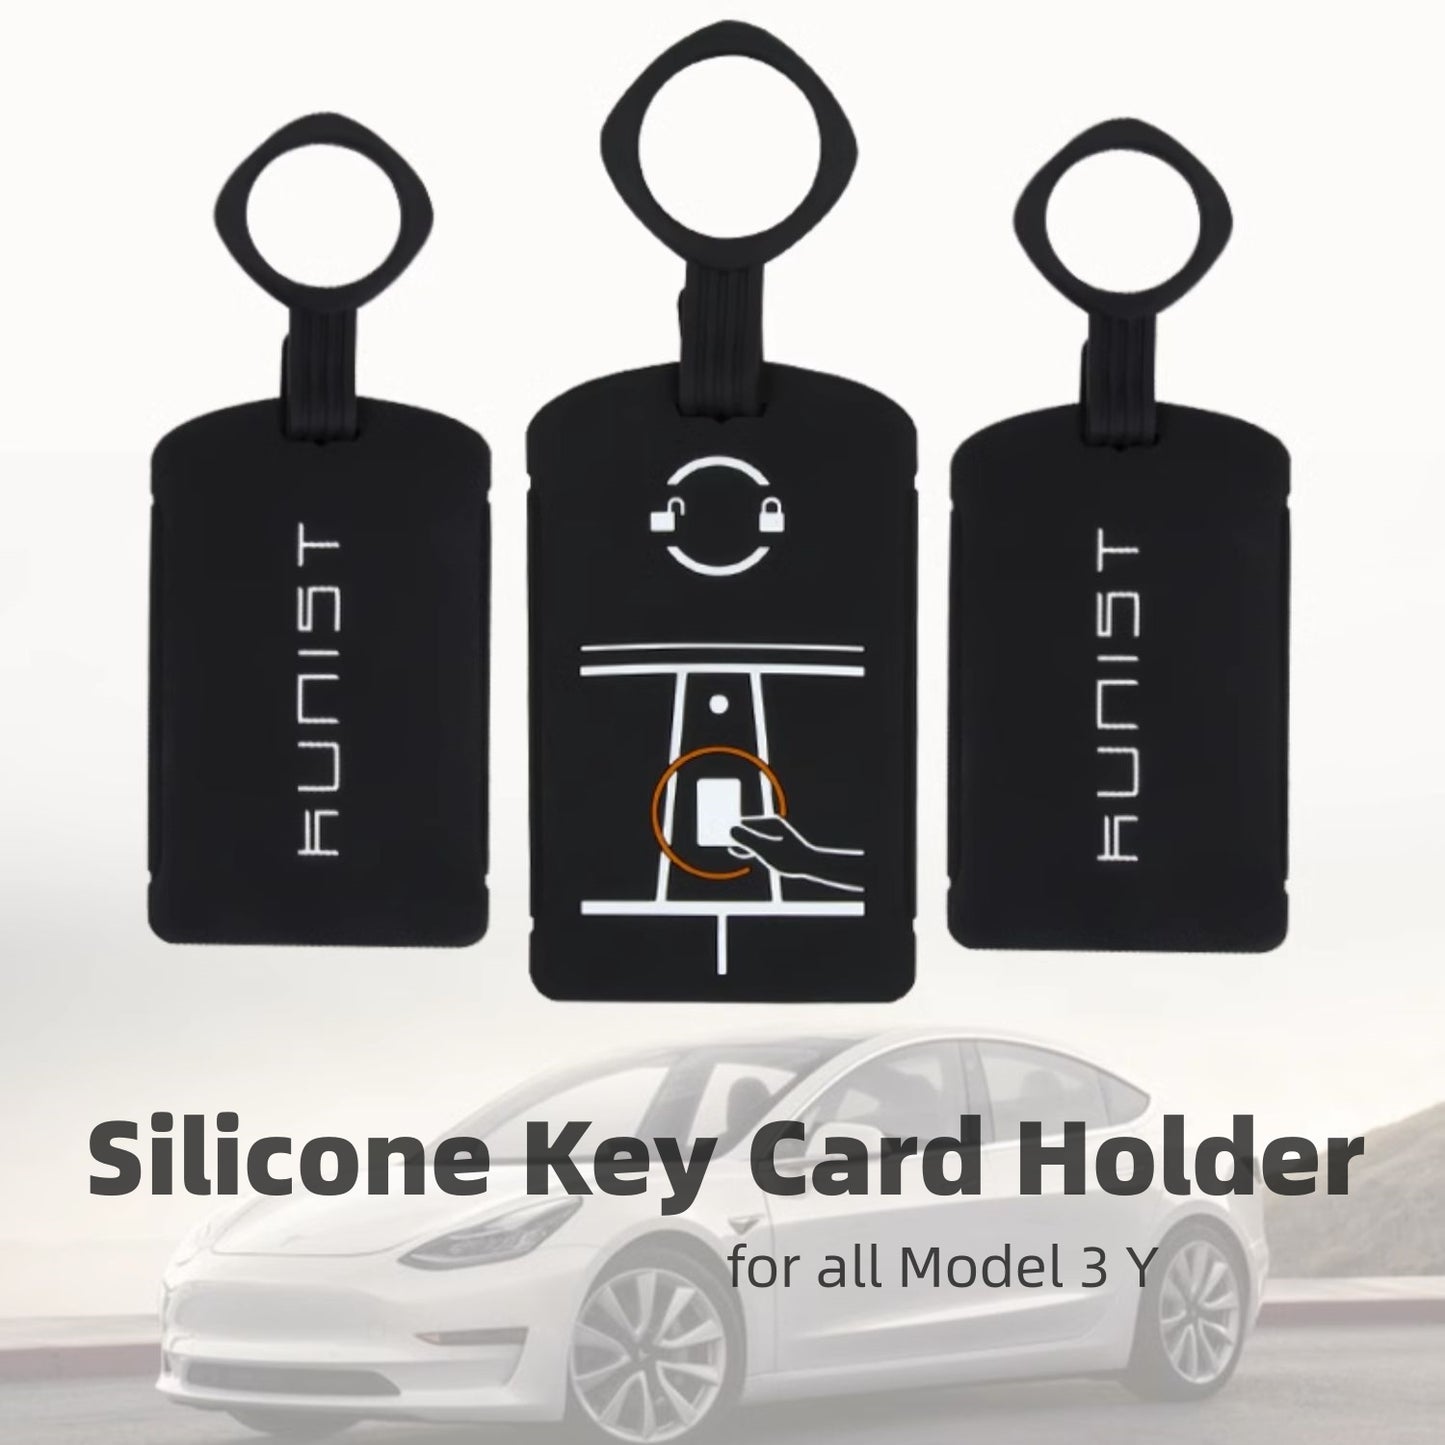 Schlüsselkartenhalter Schlüsselanhänger für alle Model 3/Y New Model 3 Highland